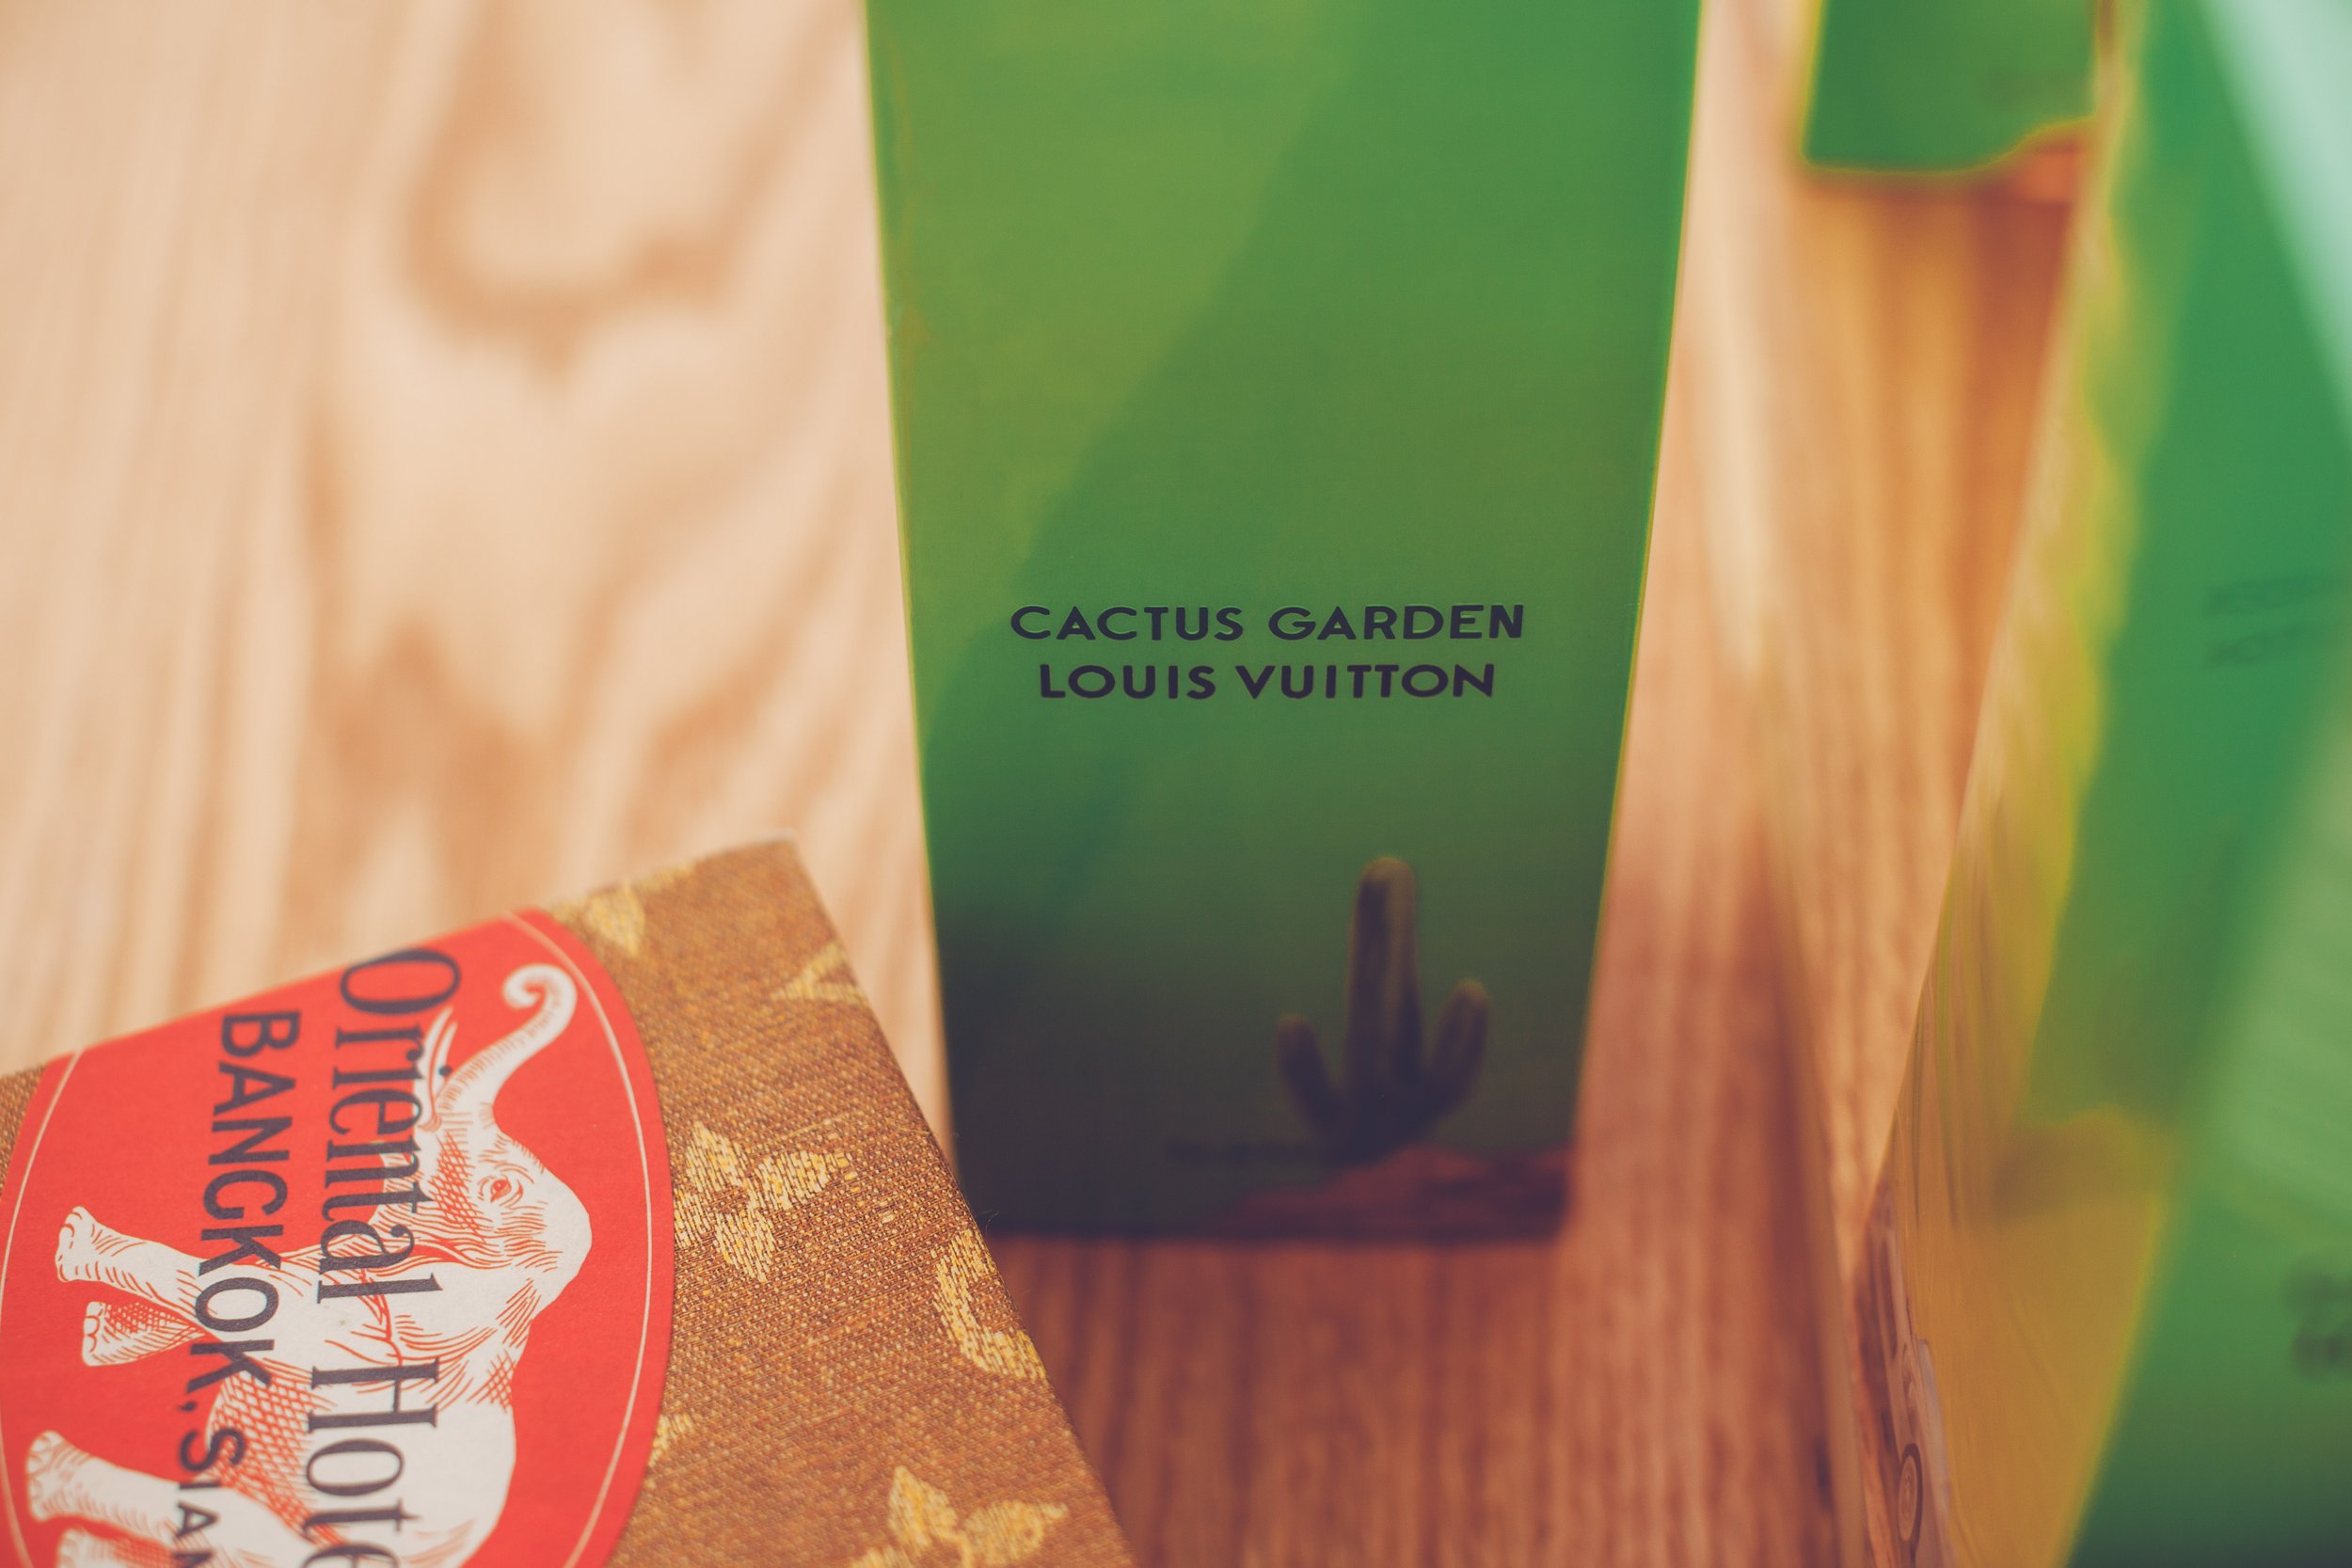 louis vuitton cactus garden perfume